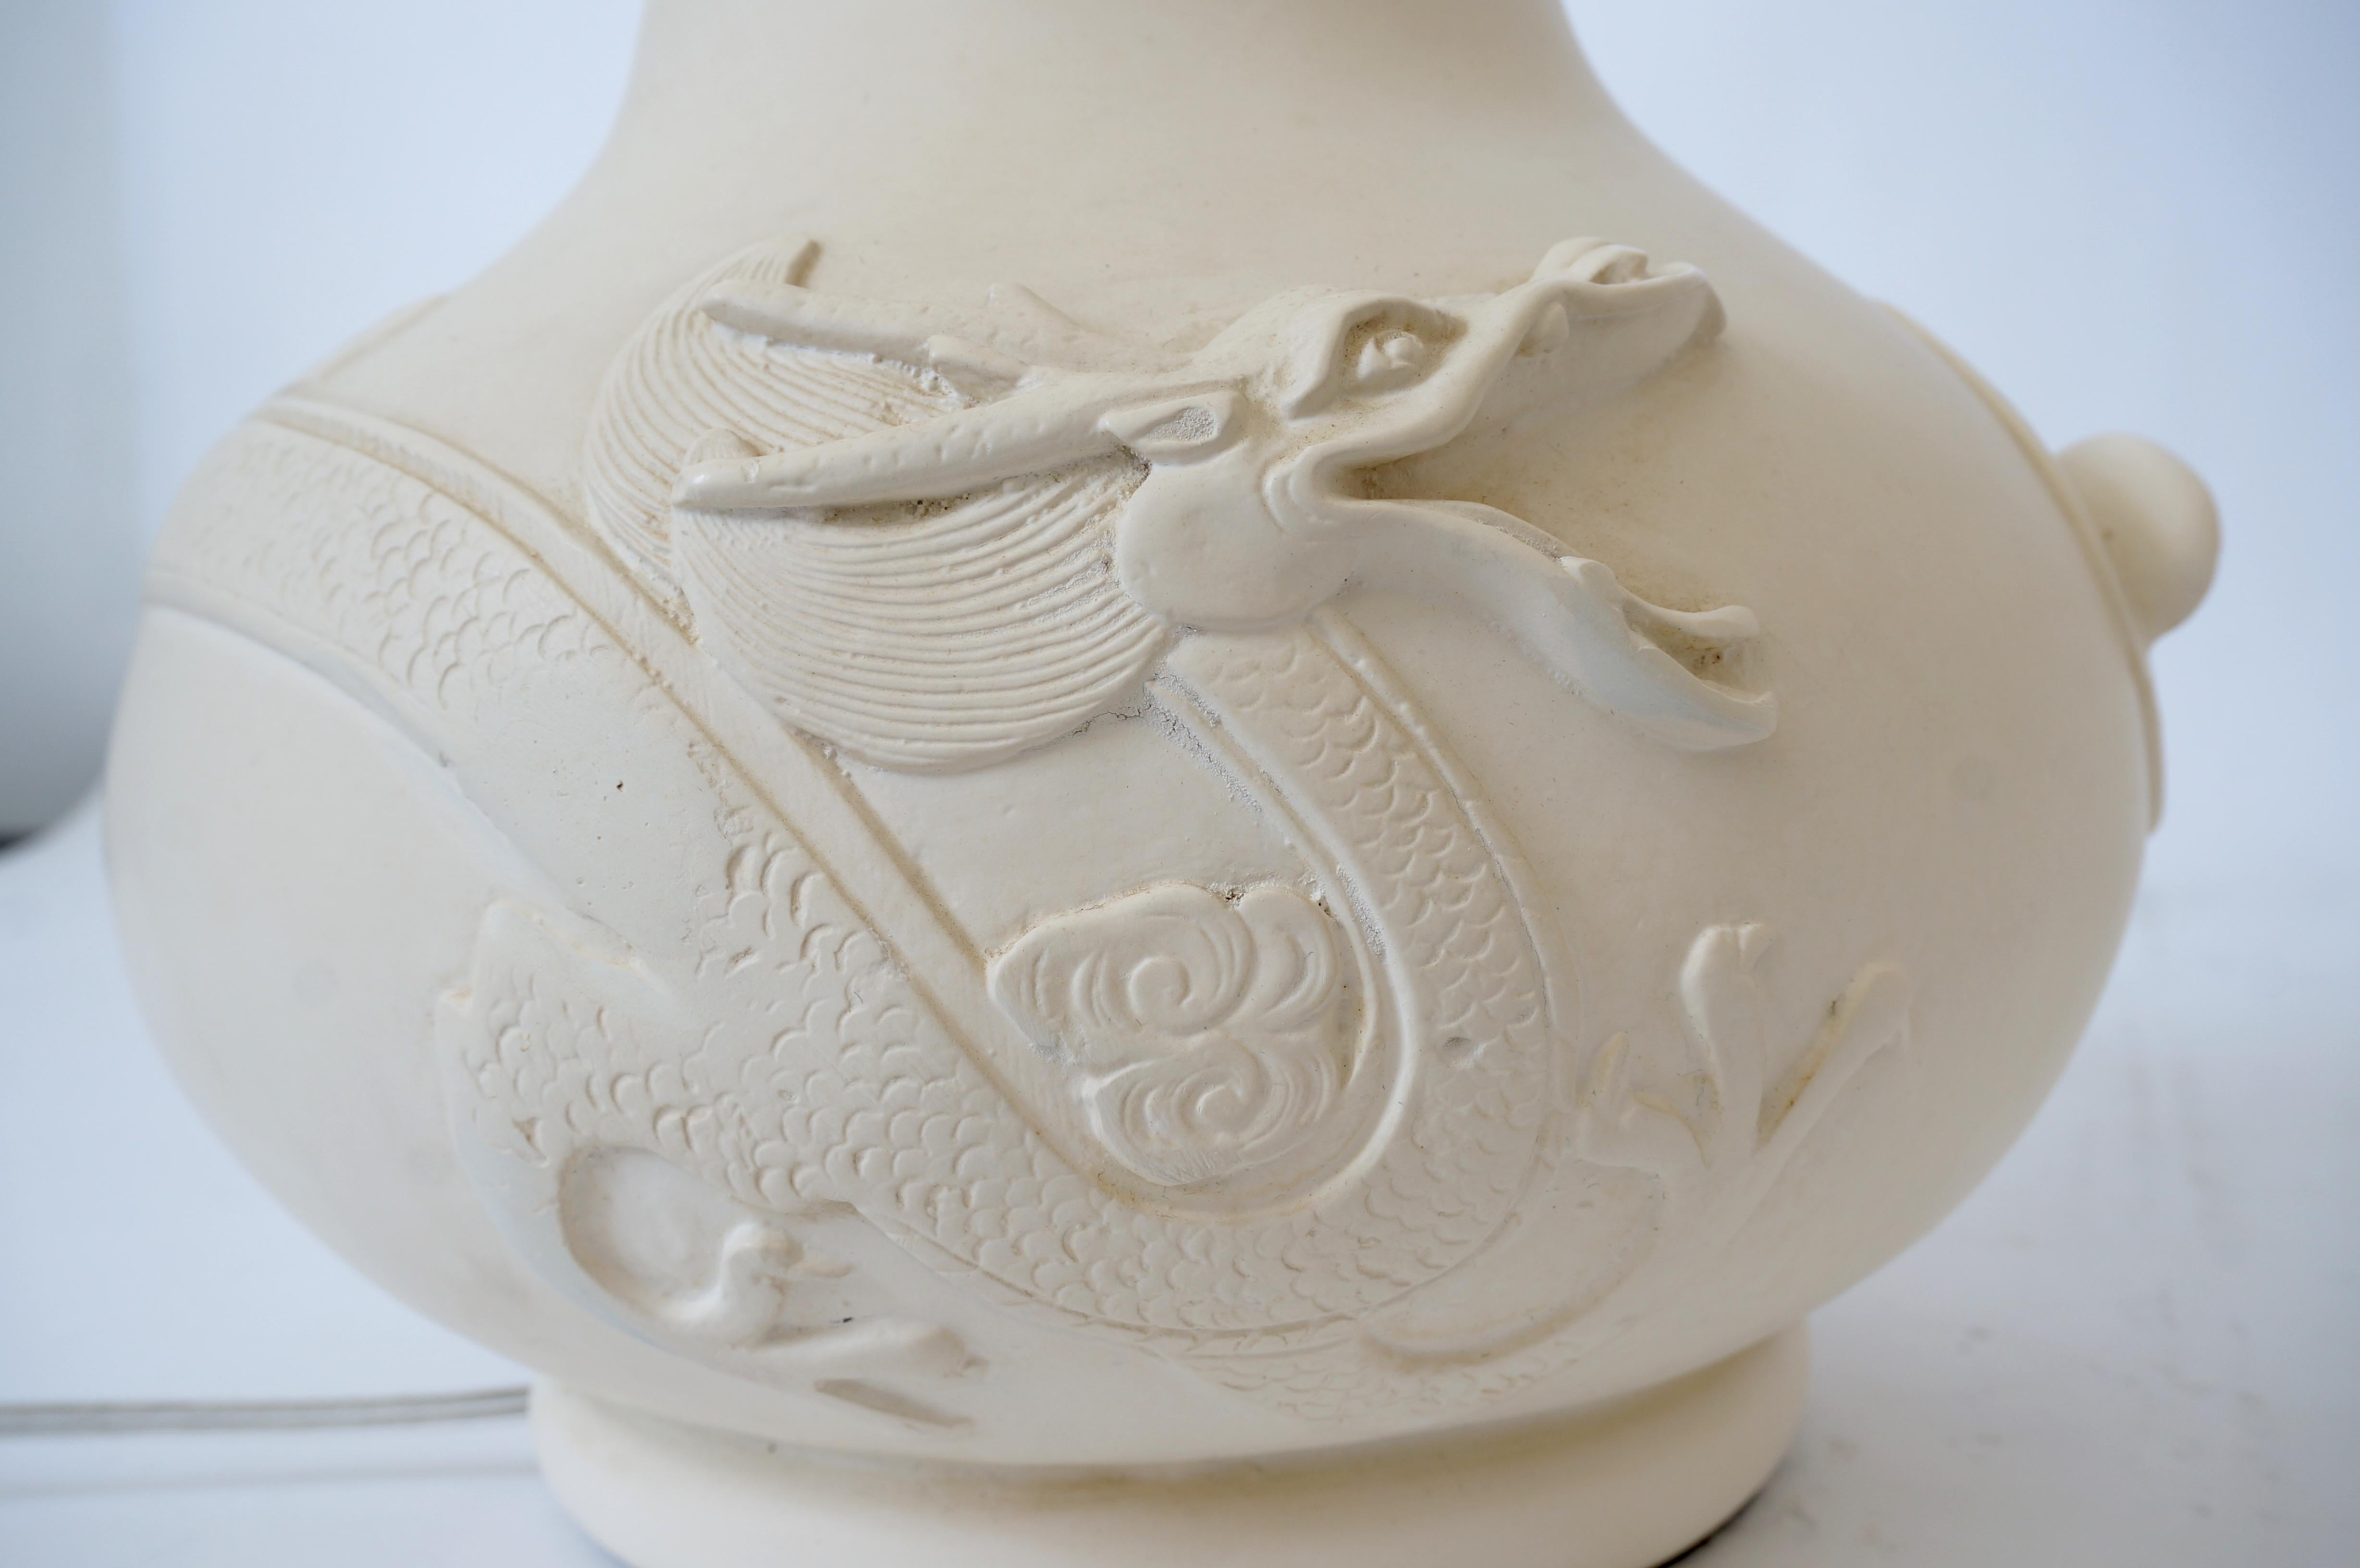 Cette paire de lampes de table Sirmos, élégante et chic, date des années 1970 et a définitivement une forme Art Déco Moderne avec son dragon stylisé et ses grues flottant sur la forme du vase. 

Remarque : La dimension jusqu'au sommet de l'embout